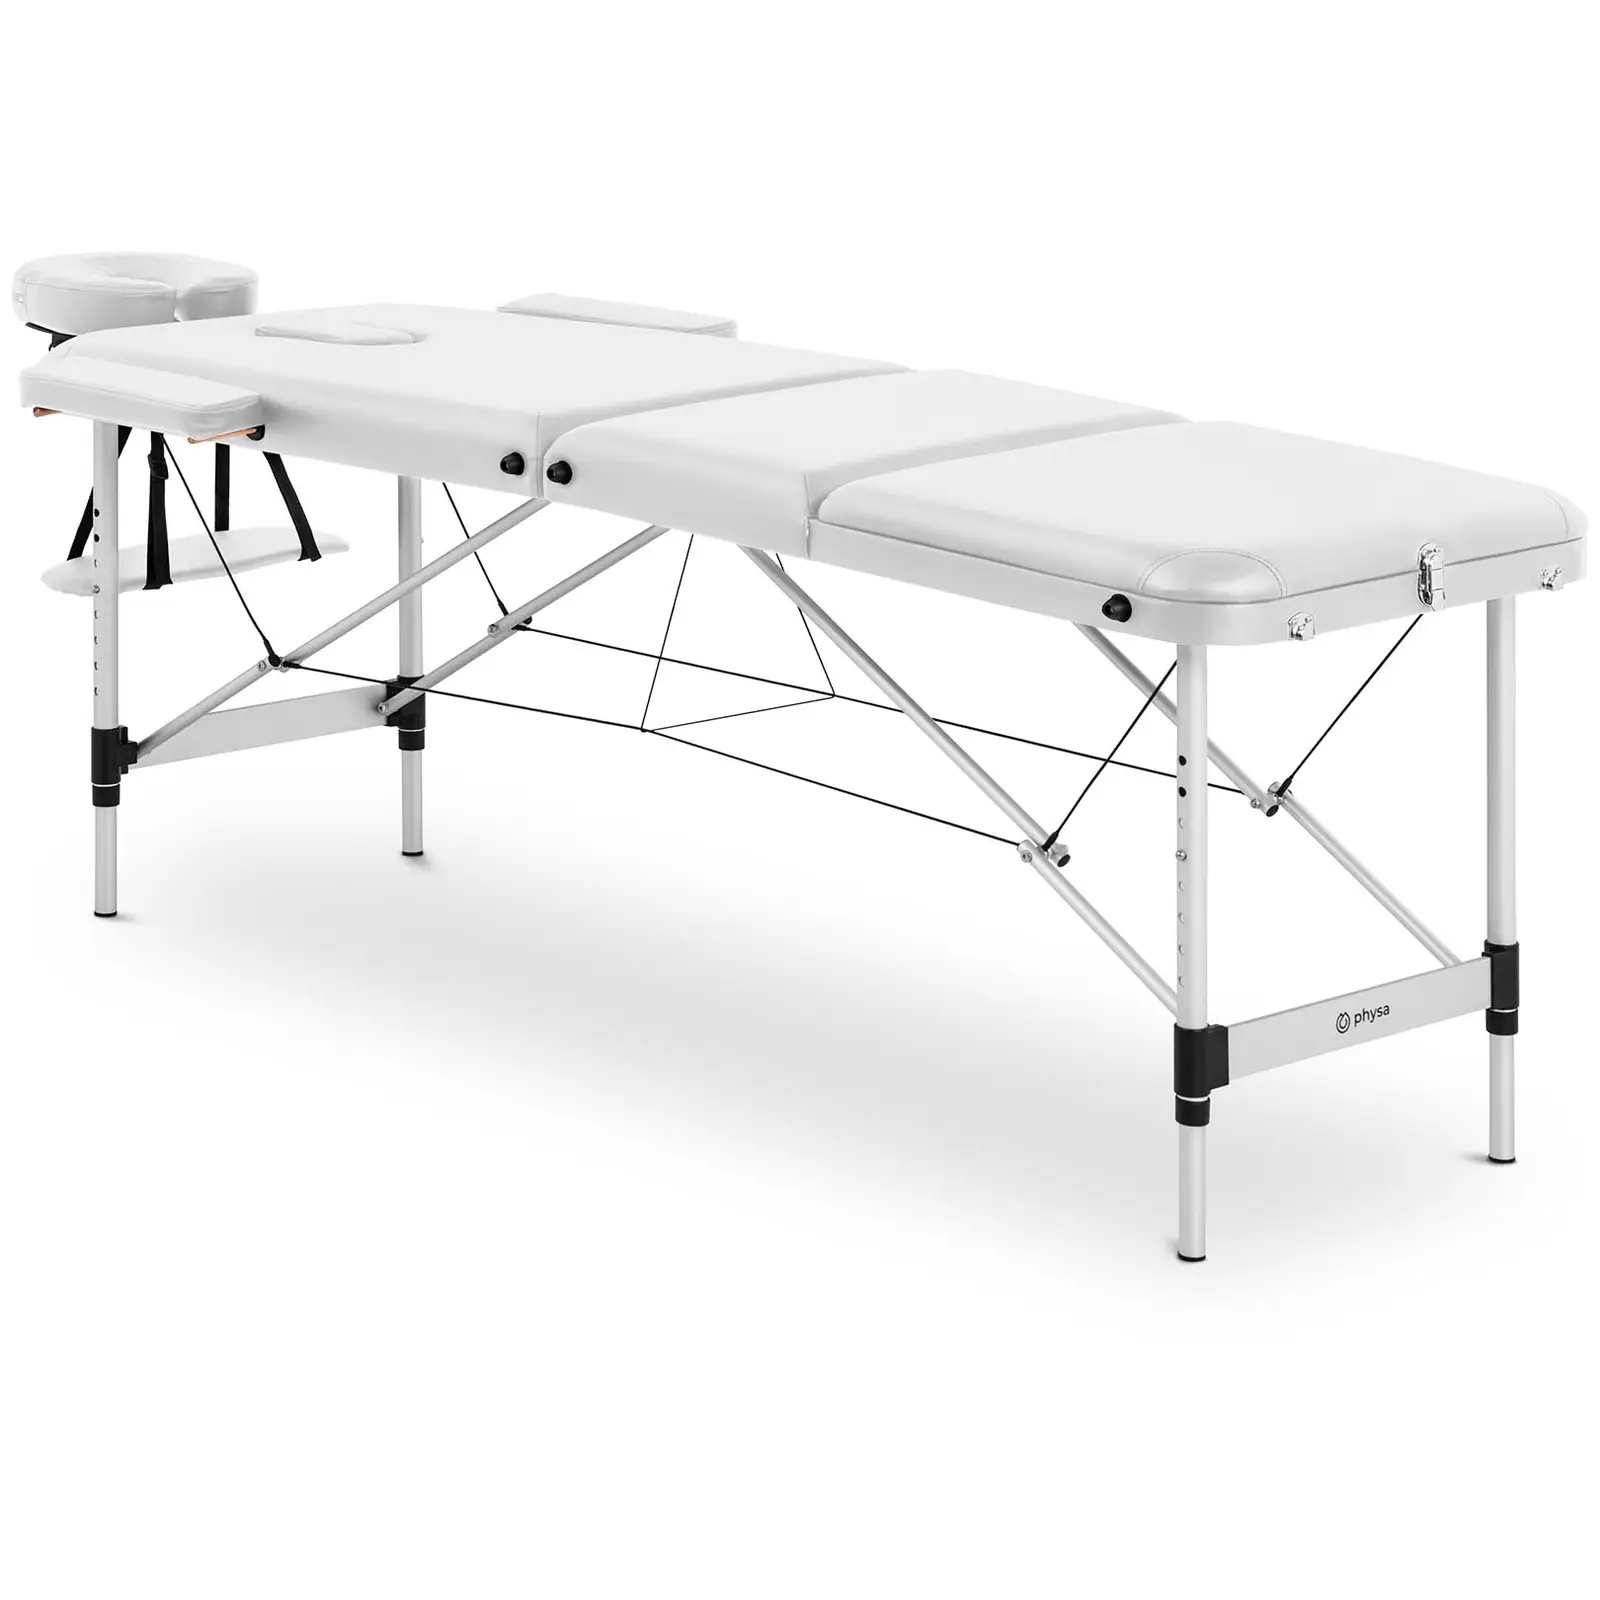 Table de massage pliante - 185 x 60 x 59 cm - 180 kg - White